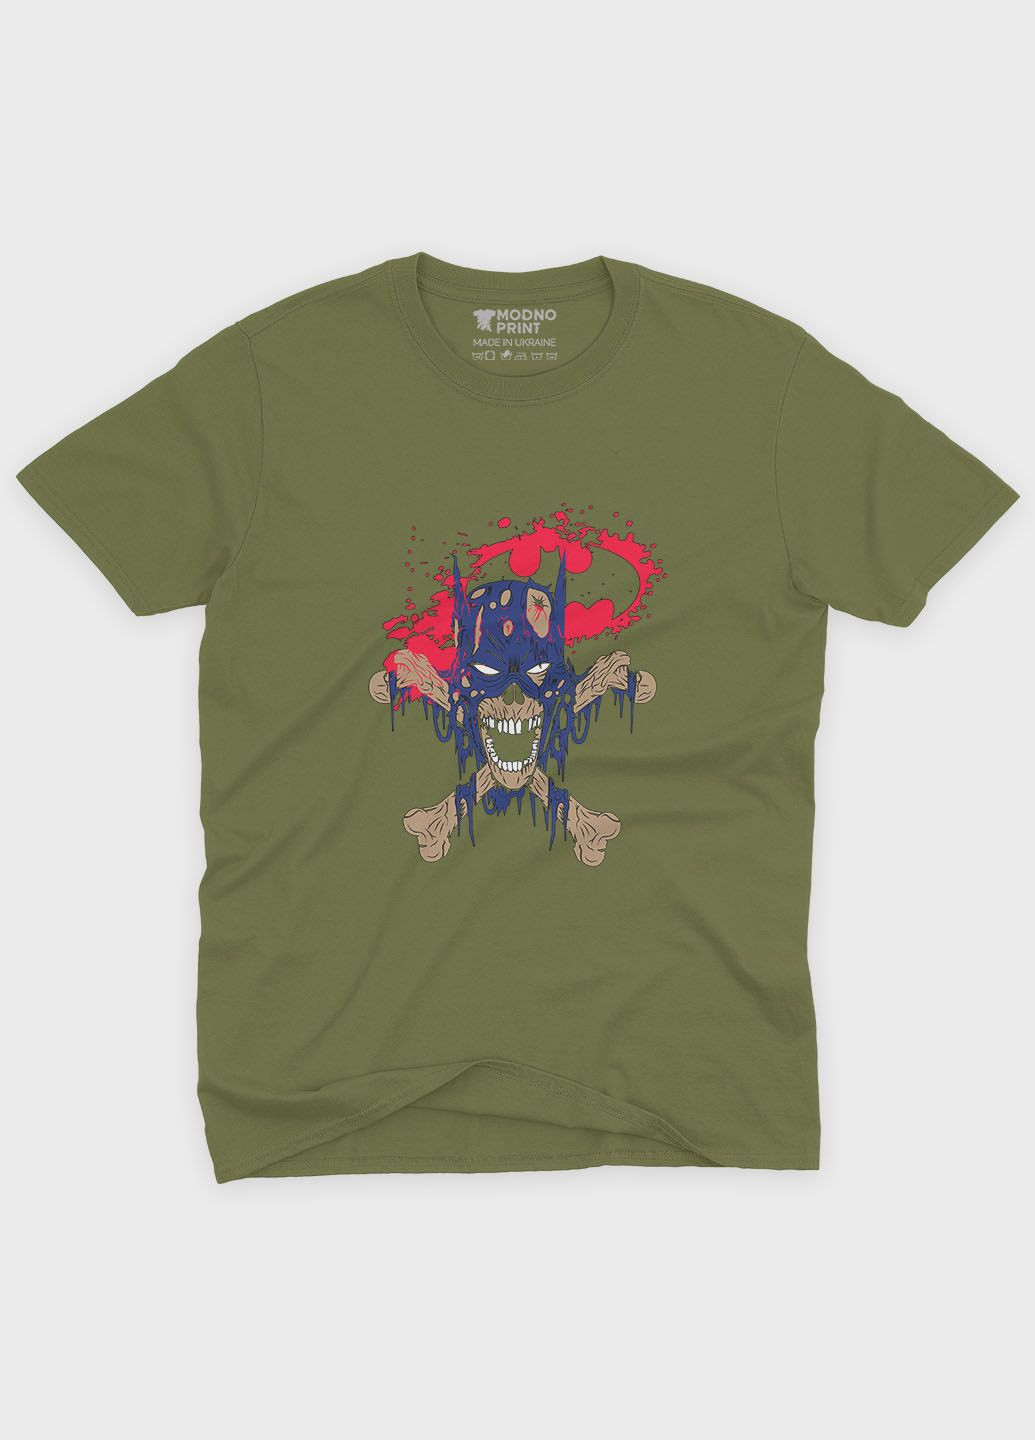 Хаки (оливковая) мужская футболка с принтом супергероя - бэтмен (ts001-1-hgr-006-003-038) Modno